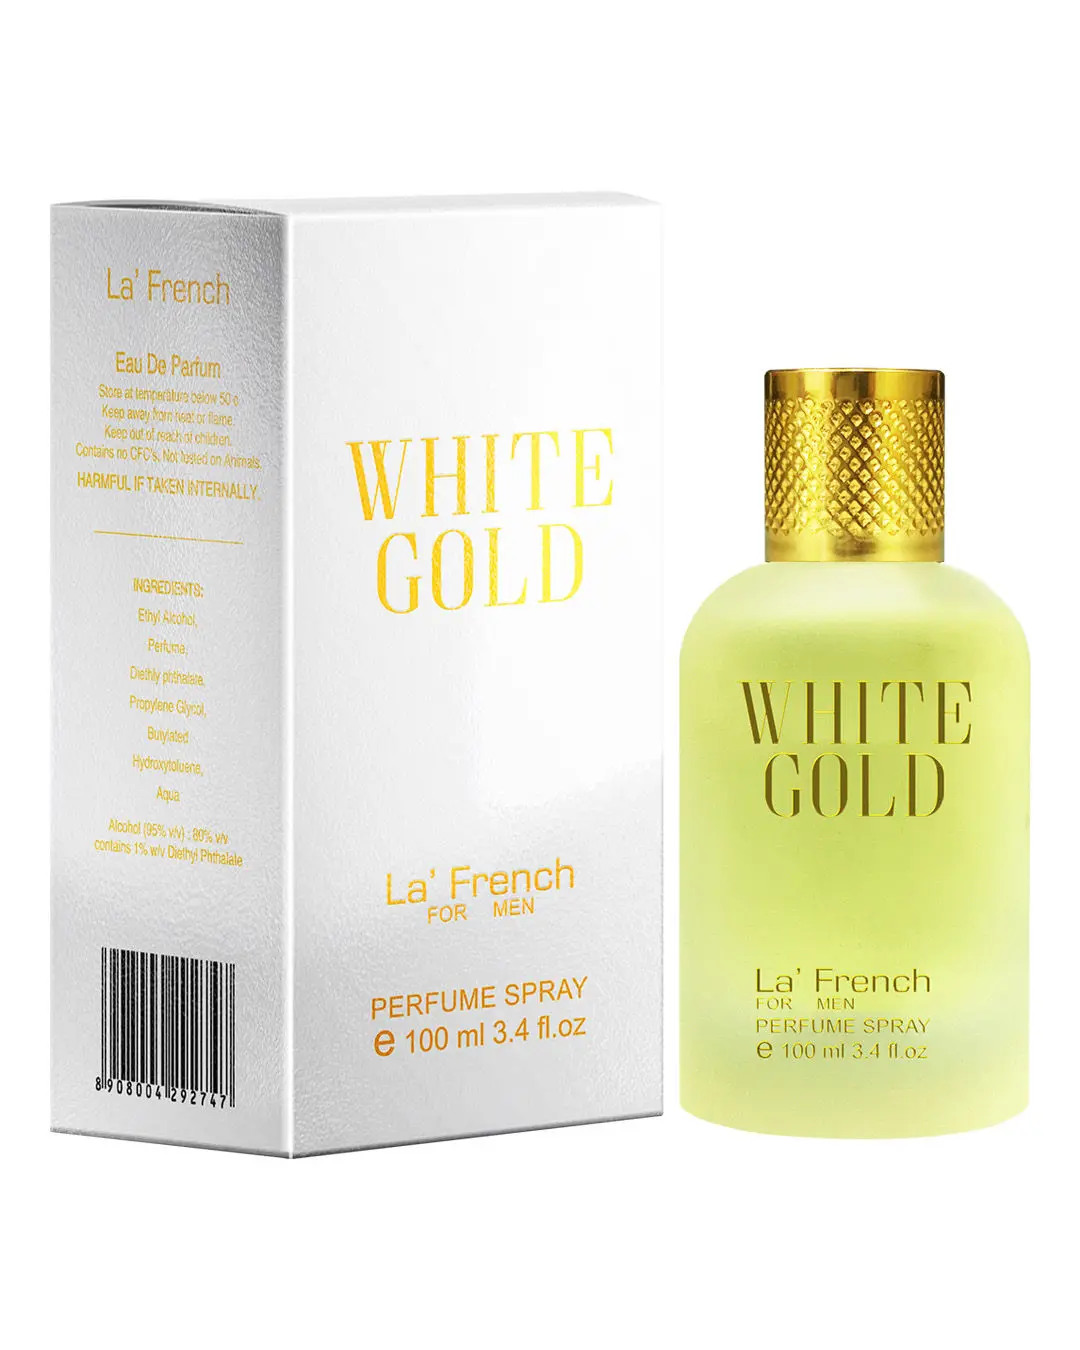 LA' French White Gold, Perfume By La' French, Eau De Parfum (100 ml) - Ideal For Men